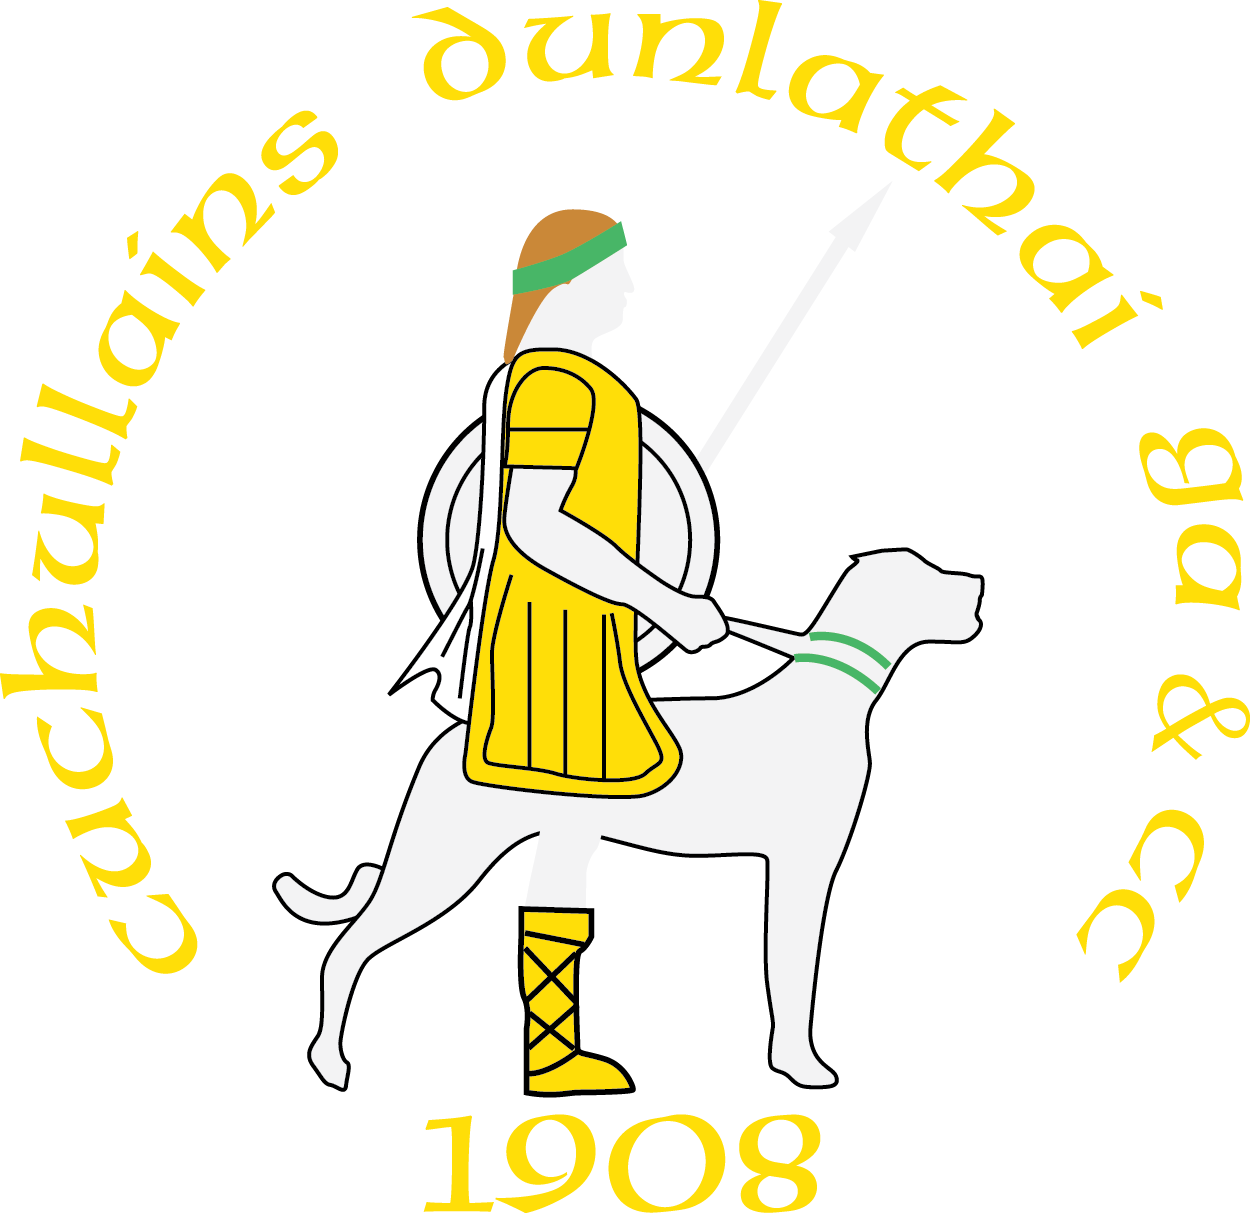 Dunloy Cúchullain's